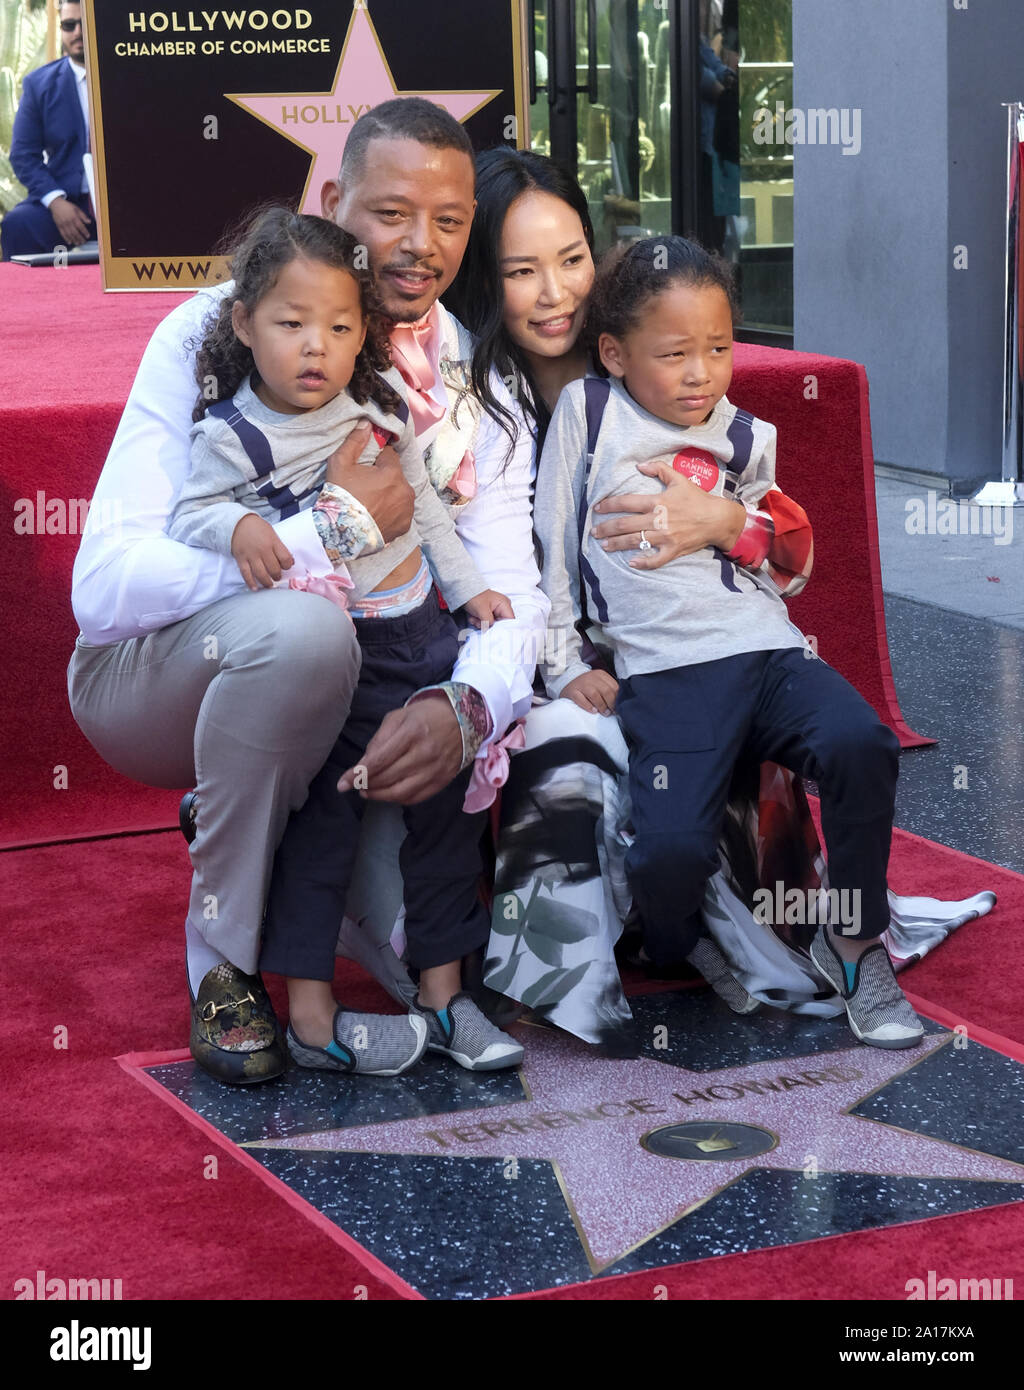 El 24 de septiembre de 2019, Los Angeles, California, U.S: el actor  Terrence Howard y su esposa Miranda Pak con sus niños a asistir a la  ceremonia de su estrella en el